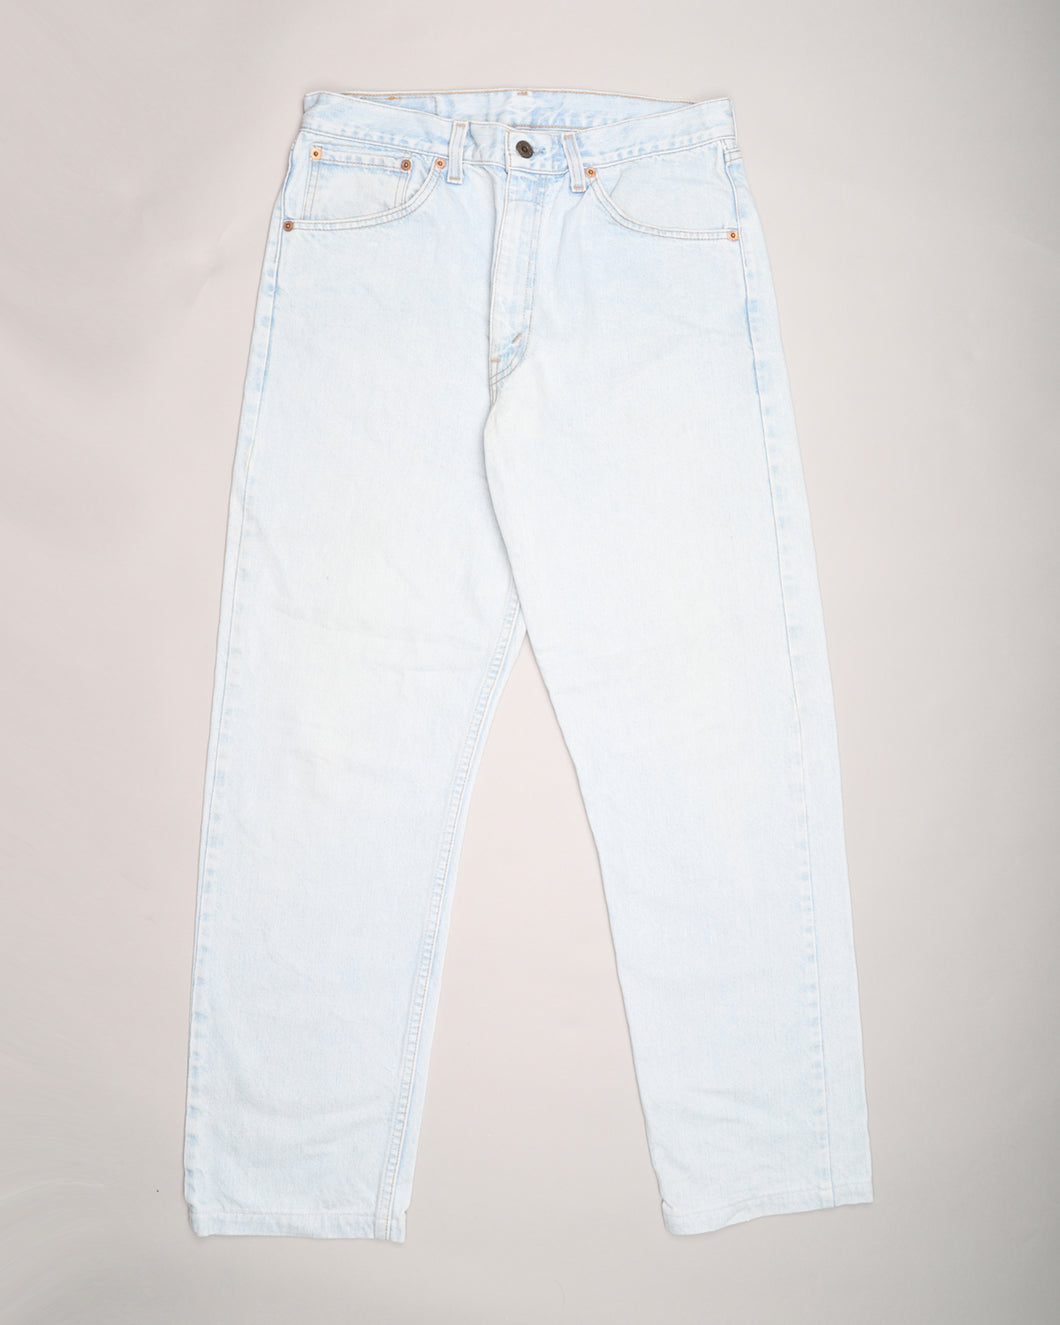 Pale Blue Levi's 521's Straight Cut Jeans